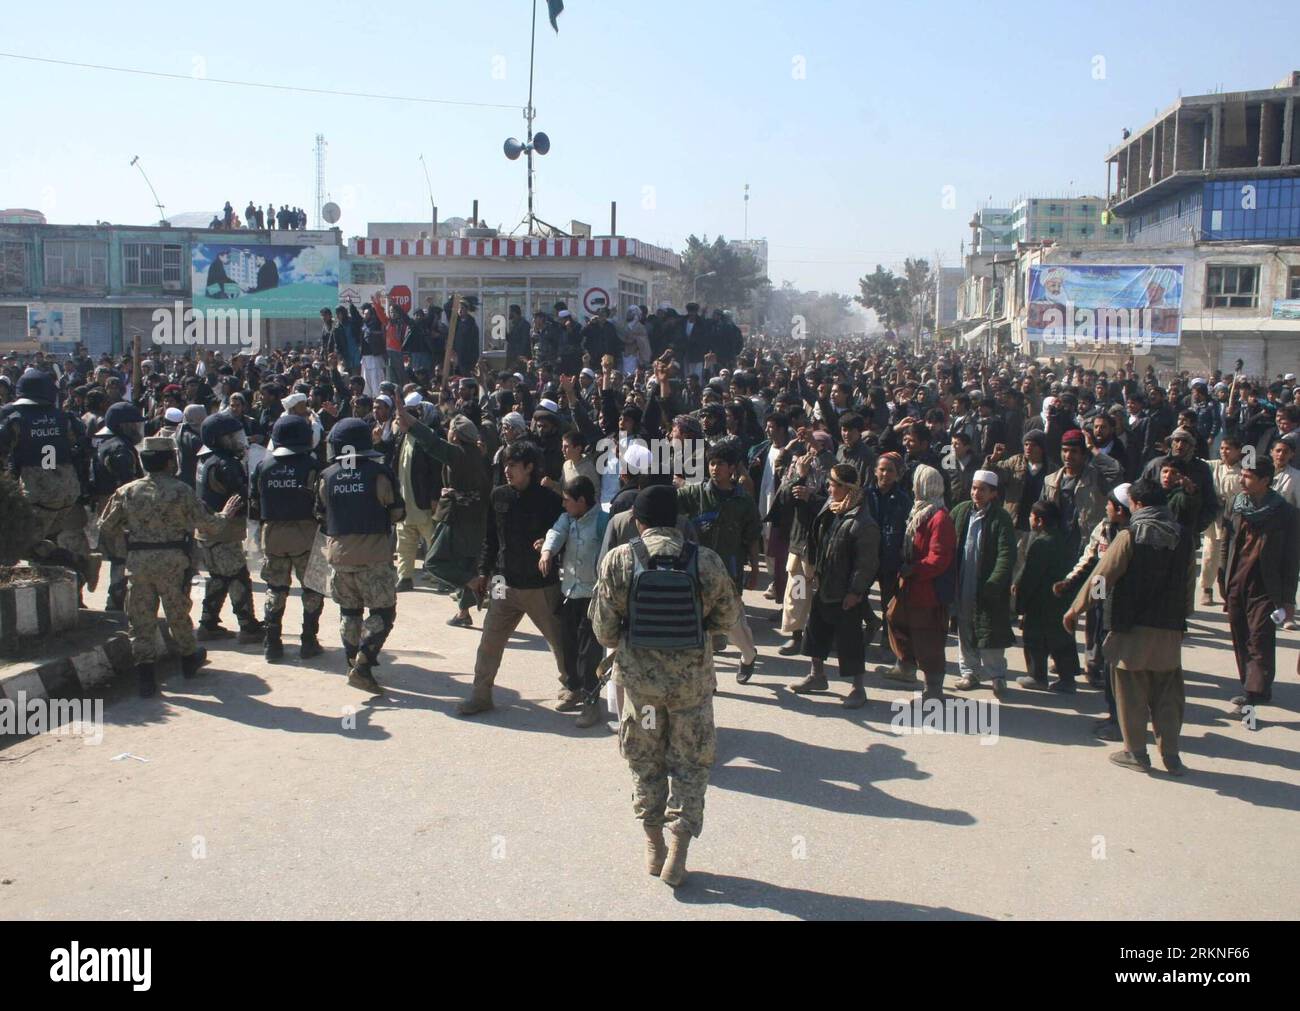 Bildnummer : 57109855 Datum : 25.02.2012 Copyright : imago/Xinhua (120226) -- KUNDUZ, 26 février 2012 (Xinhua) -- les Afghans protestent contre la profanation du Coran dans la province de Kunduz, Afghanistan, 25 février 2012. Une personne a été tuée et plus de deux douzaines d'autres ont été blessées alors que les manifestations contre les incendies présumés du Coran ont repris dimanche dans certaines parties de la province de Kunduz, à 250 km au nord de la capitale kaboul, a indiqué la police. (Xinhua/Fulad)(zcc) AFGHANISTAN-KUNDUZ-QURAN-PROTEST PUBLICATIONxNOTxINxCHN Gesellschaft x2x xsk 2012 quer o0 Politik, Demo, Protest, Coran, Verbrennung, Koranverbrennung 57109855 Date 25 0 Banque D'Images